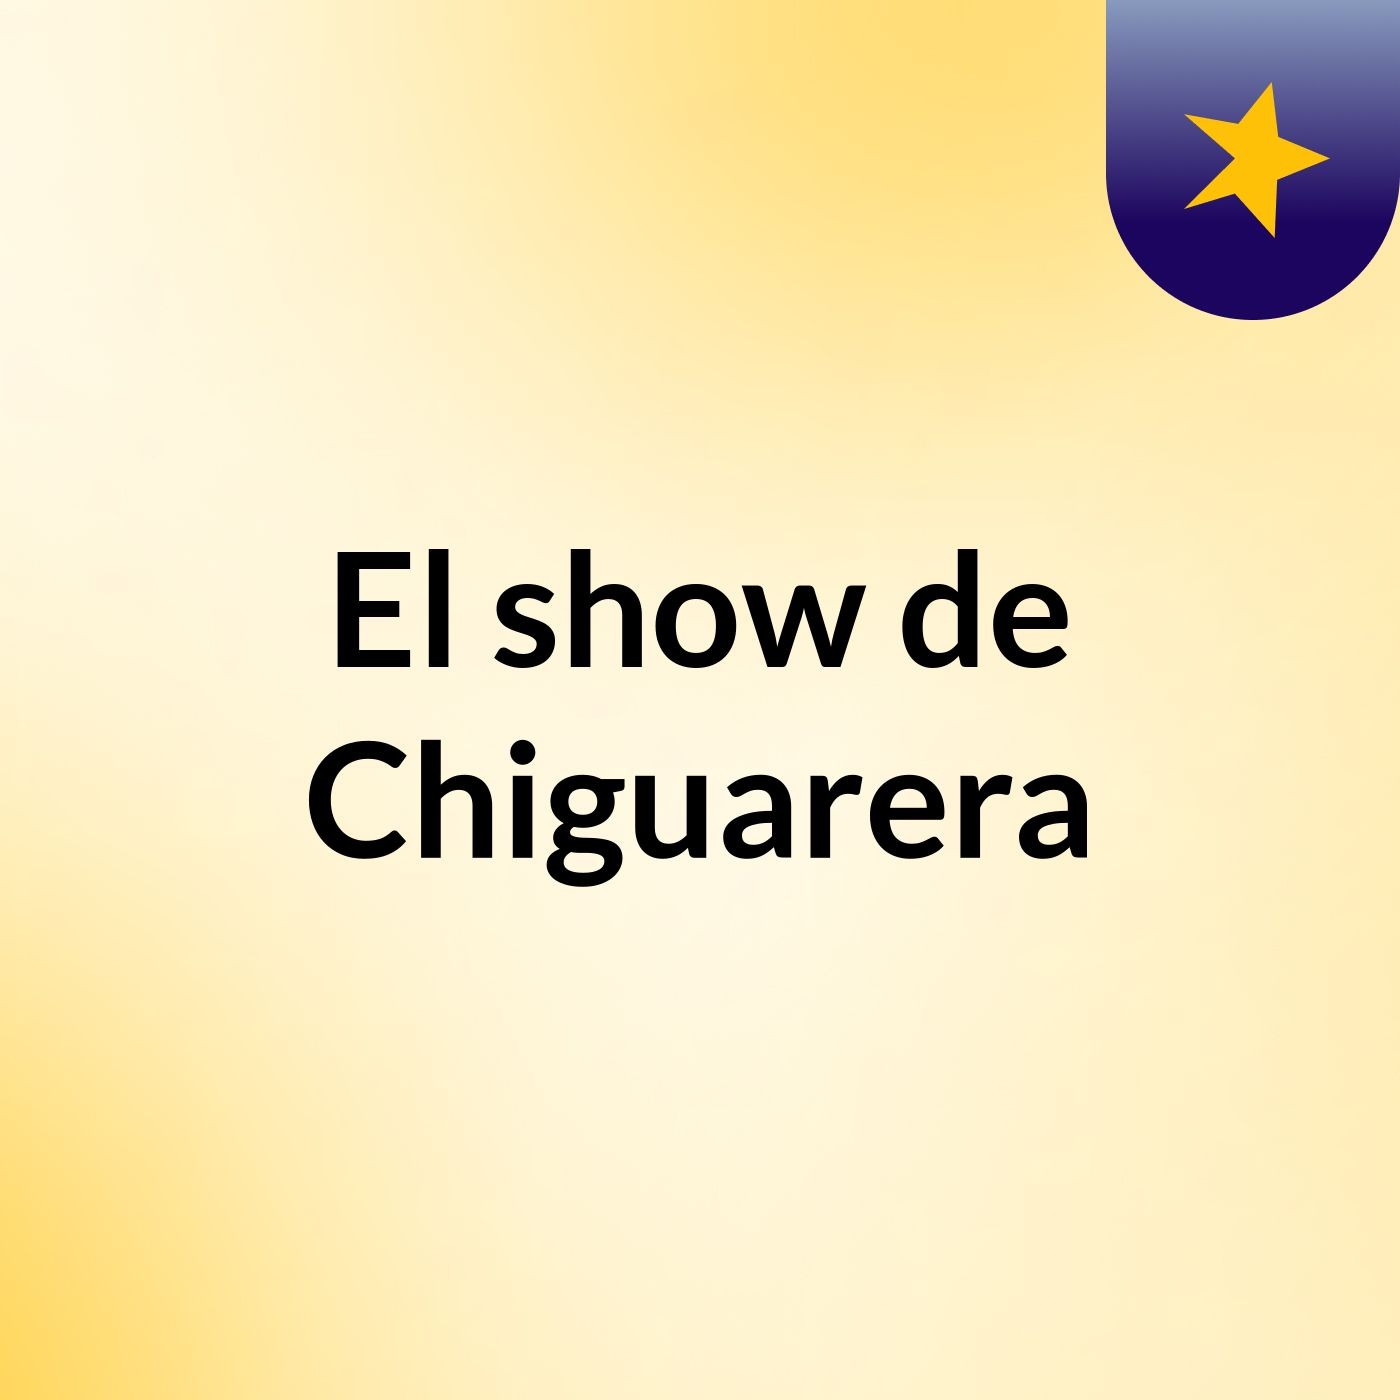 El show de Chiguarera